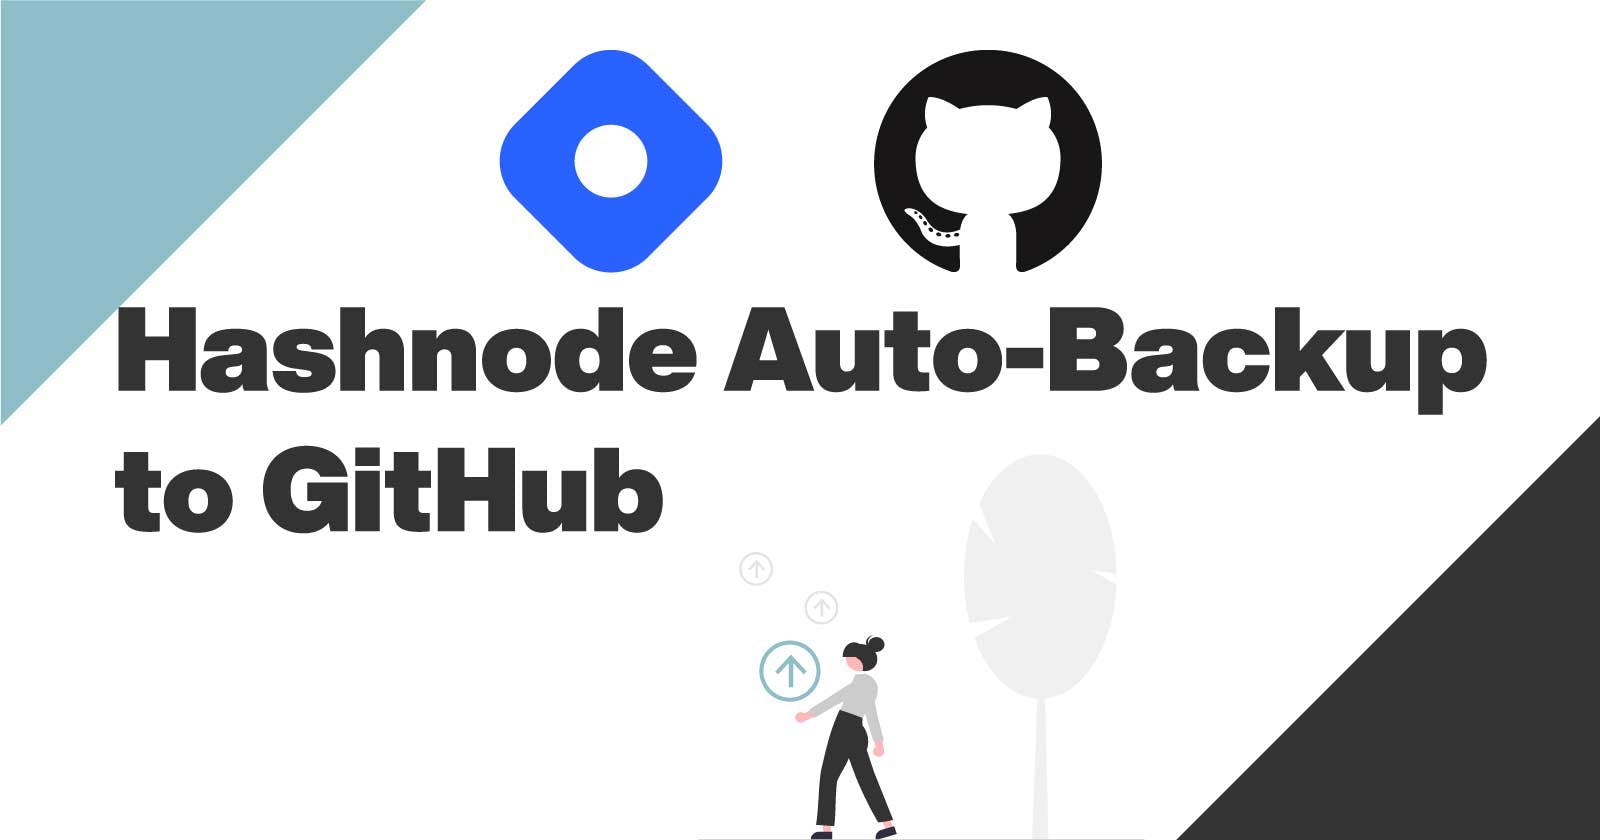 Hashnode Auto-Backup Posts on Github